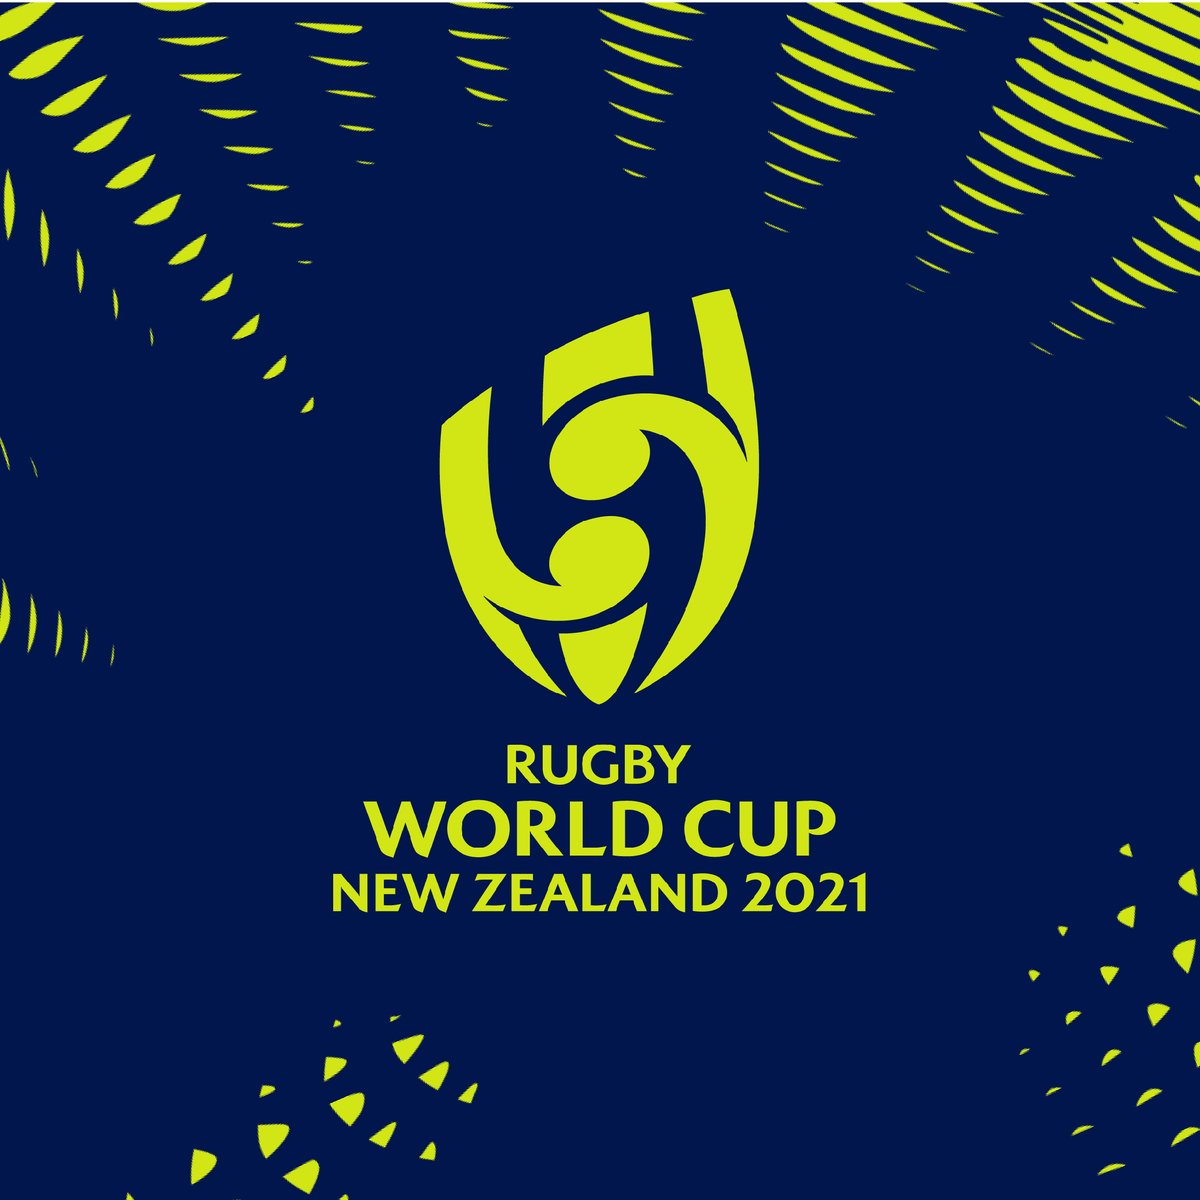 ワールドラグビー در توییتر ラグビーワールドカップ21公式ロゴ 開催日発表 ニュージーランド大会の Rwc21 ロゴが 海 をイメージしたデザインで マオリの伝統的なアートみたいですね Rwc21 大会期間 21年9月18日 10月16日 公式サイトも